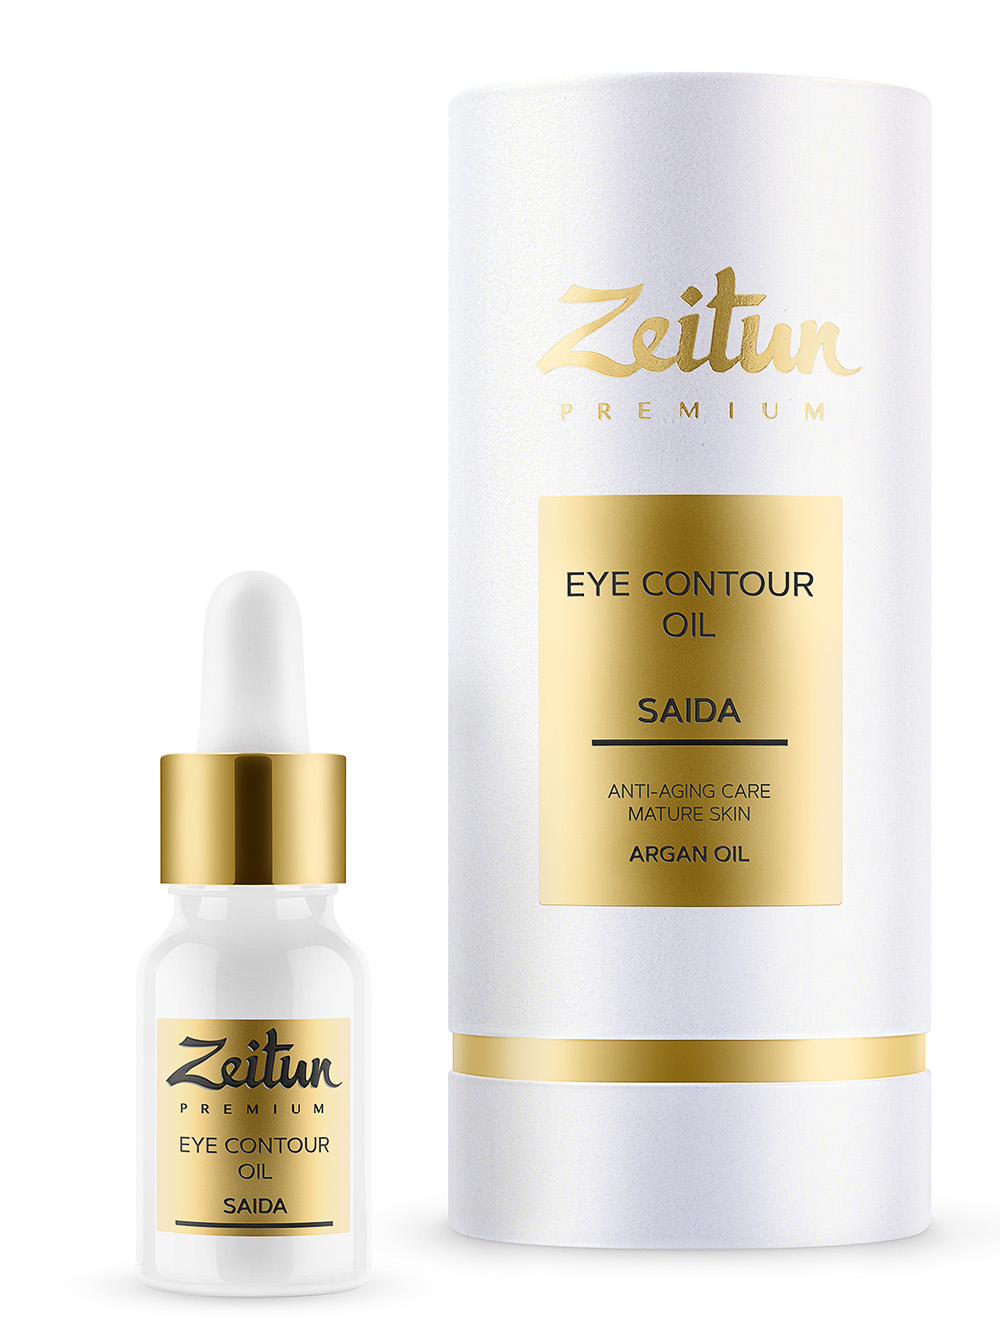 Zeitun Масляный разглаживающий эликсир для зрелой кожи контура глаз, 10 мл (Zeitun, Premium)